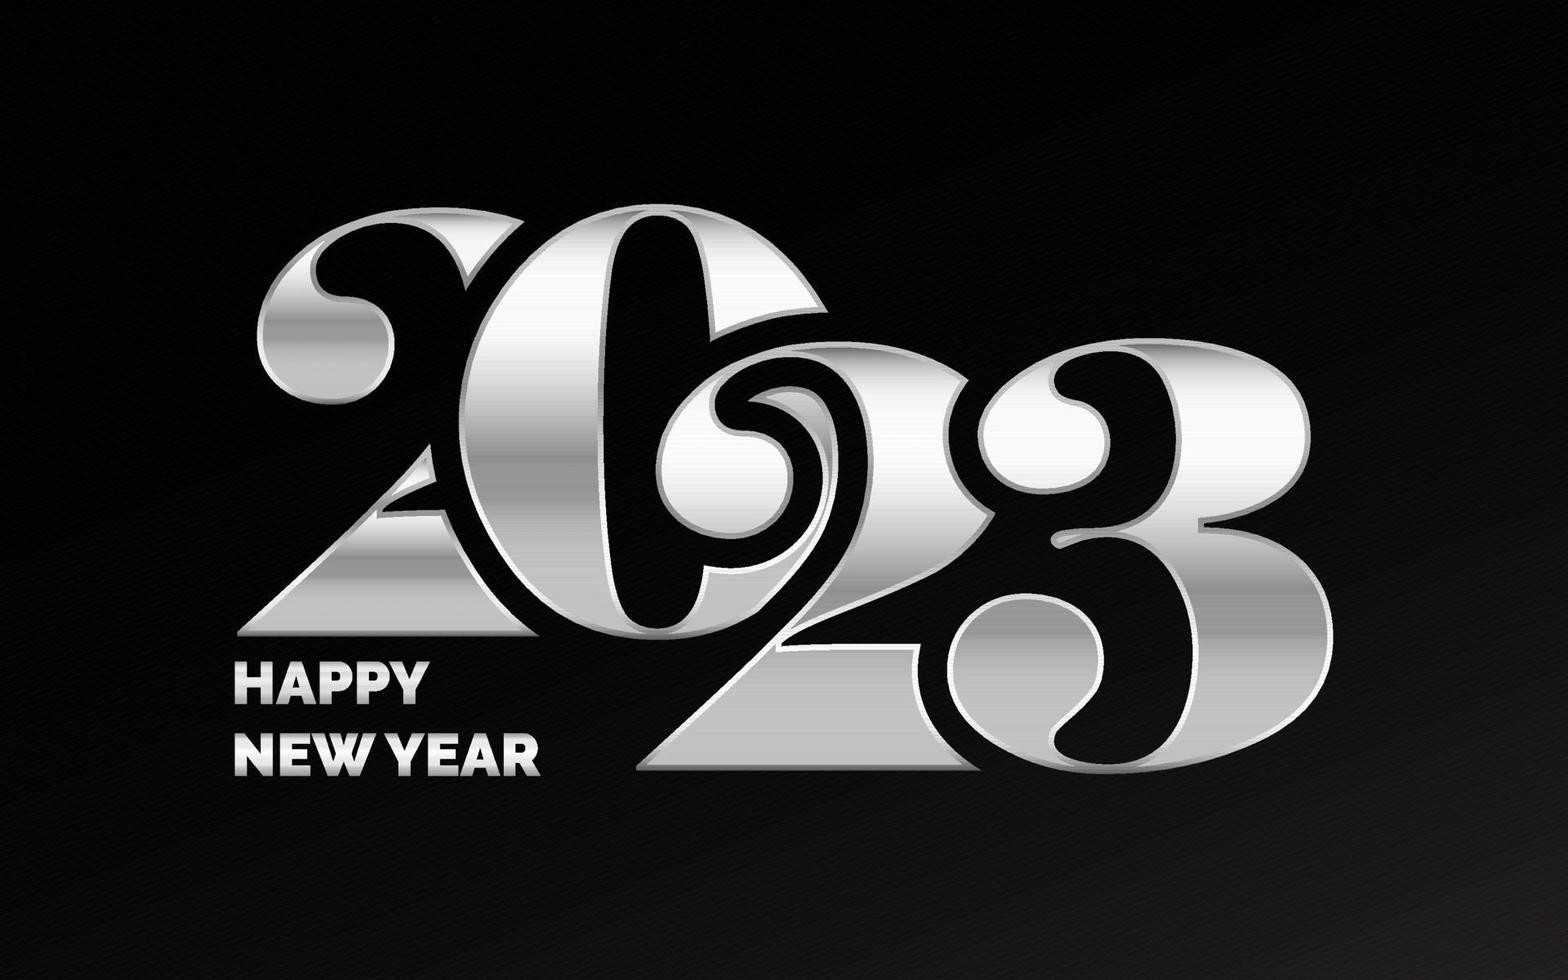 novo design de tipografia do ano 2023. ilustração de logotipo de números de 2023 vetor